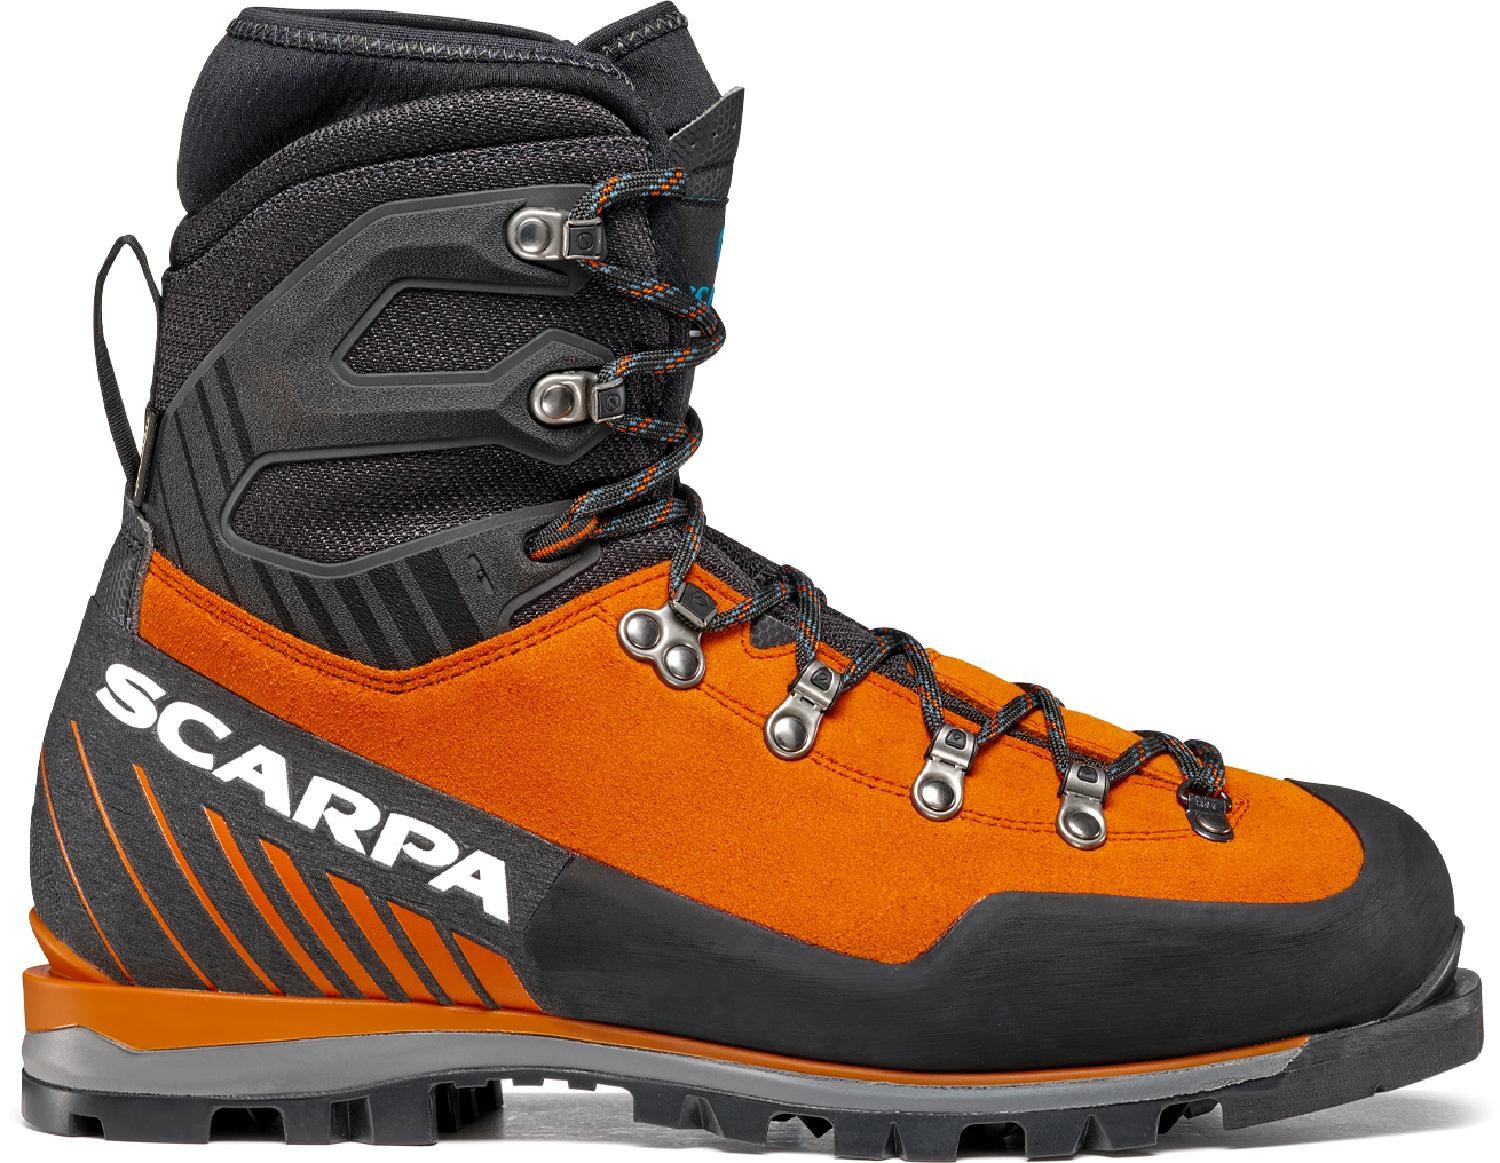 Альпинистские ботинки Mont Blanc Pro GTX — мужские Scarpa, оранжевый фотографии